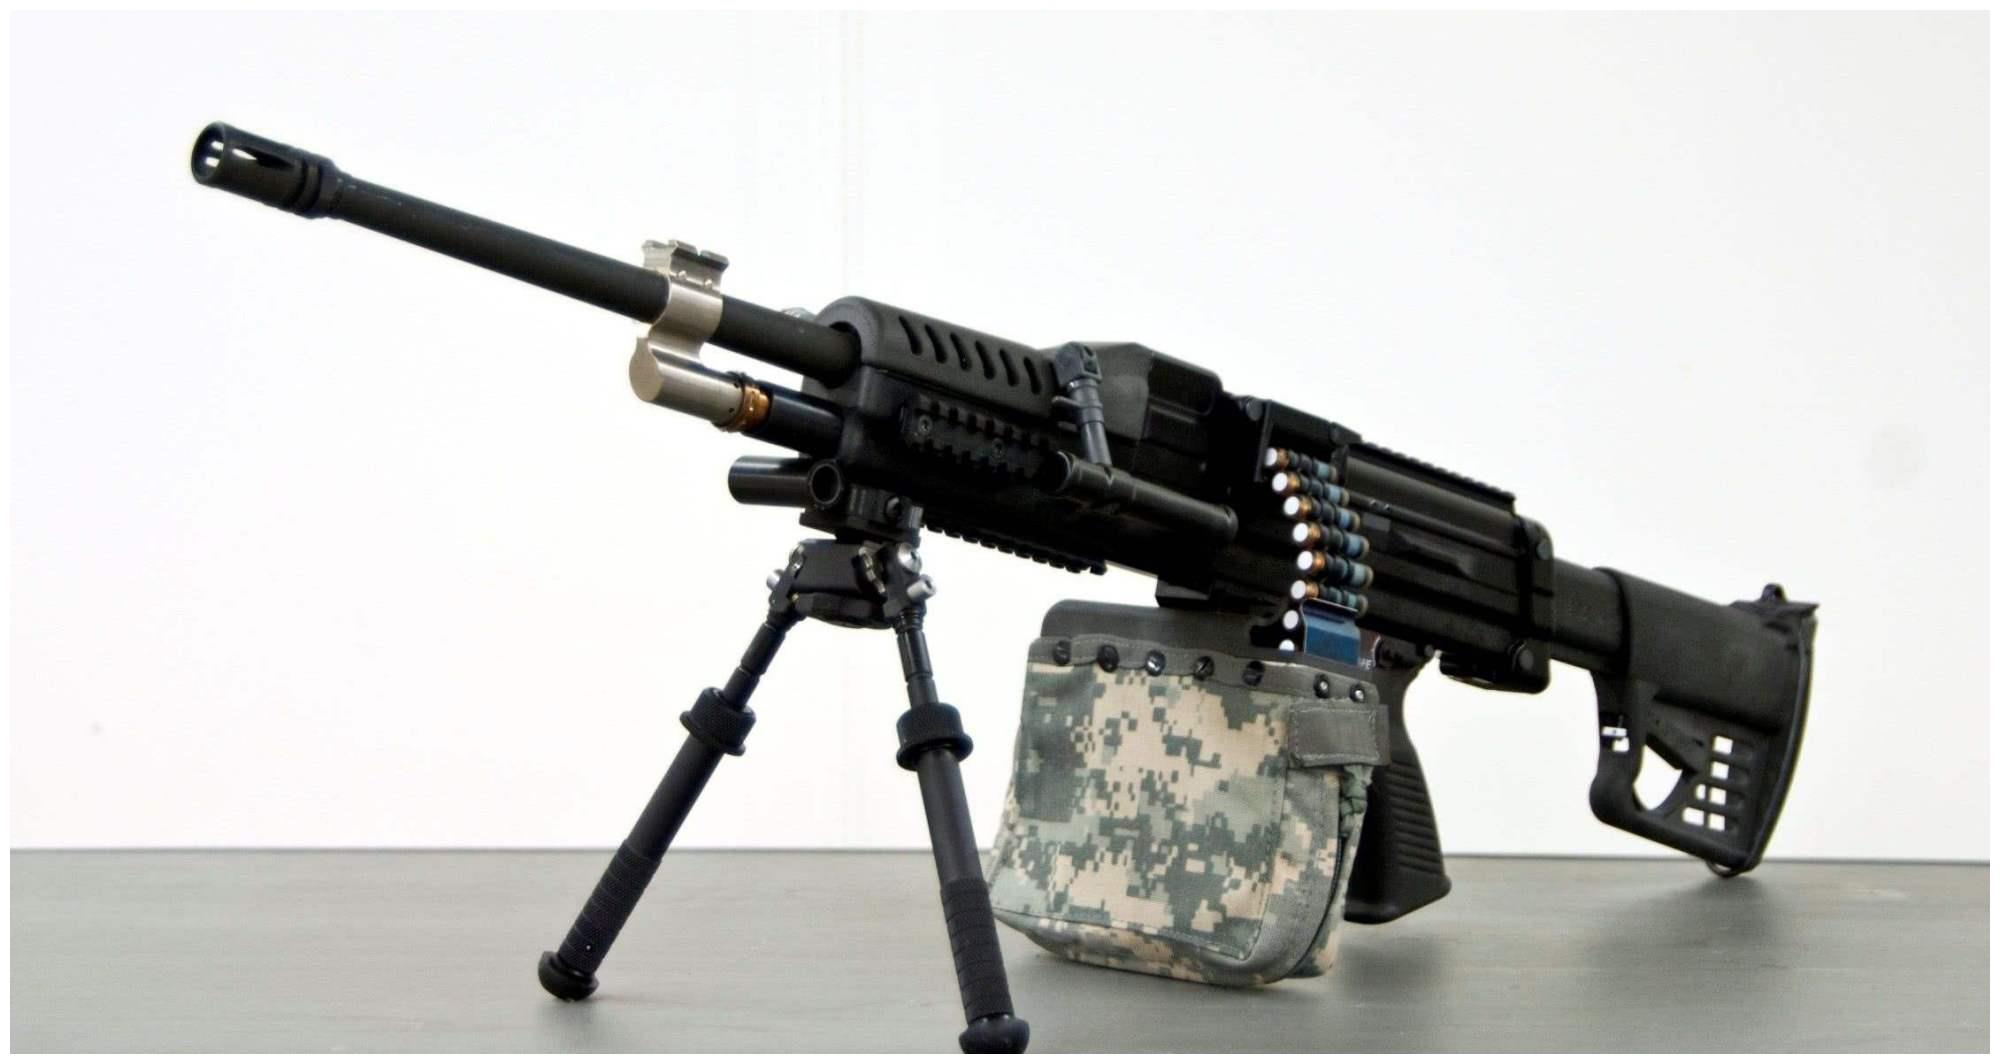 原创国产新一代12.7毫米口径重机枪曝光,中美欧竞相研发火力支援武器